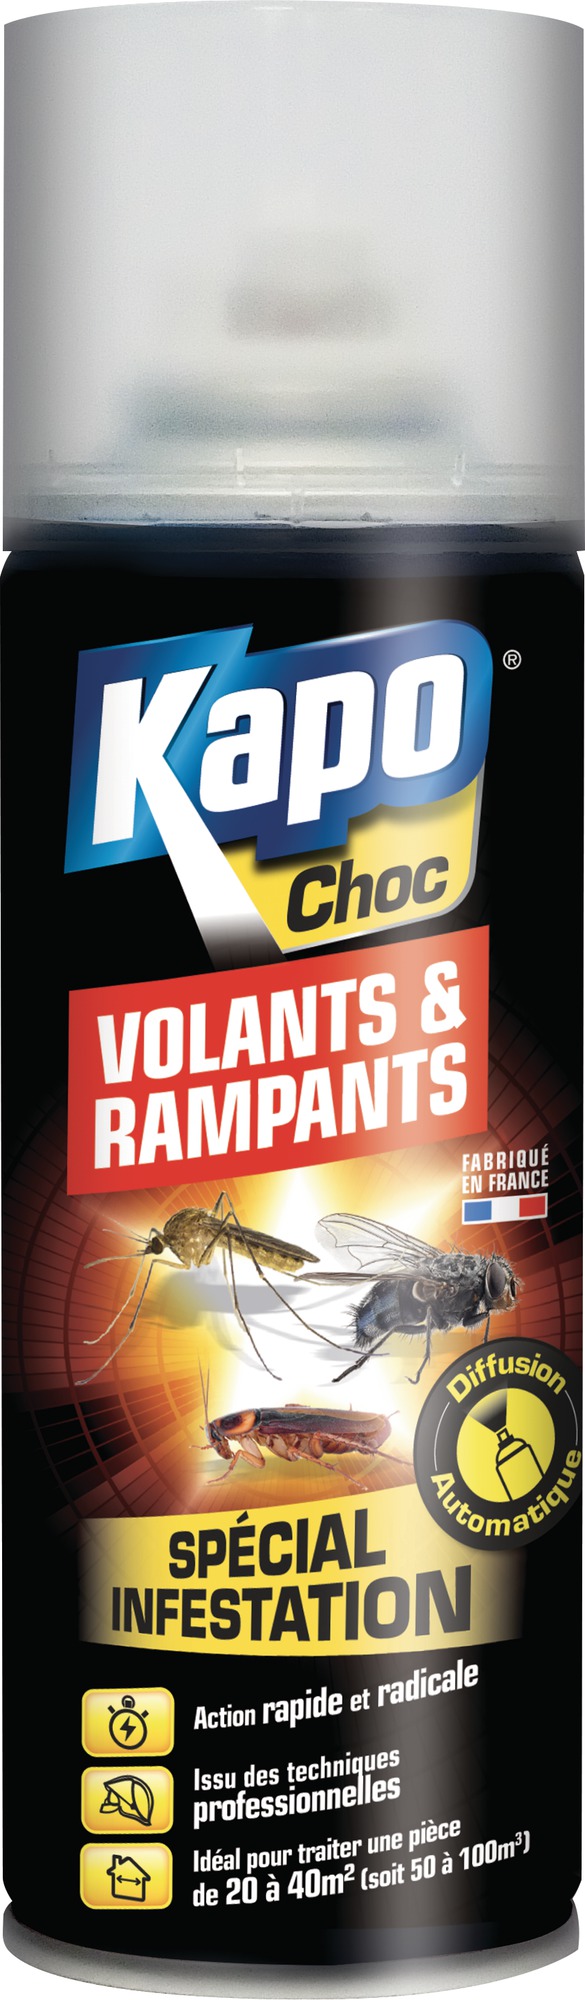 Aérosol tous insectes Kapo choc - 200 ml